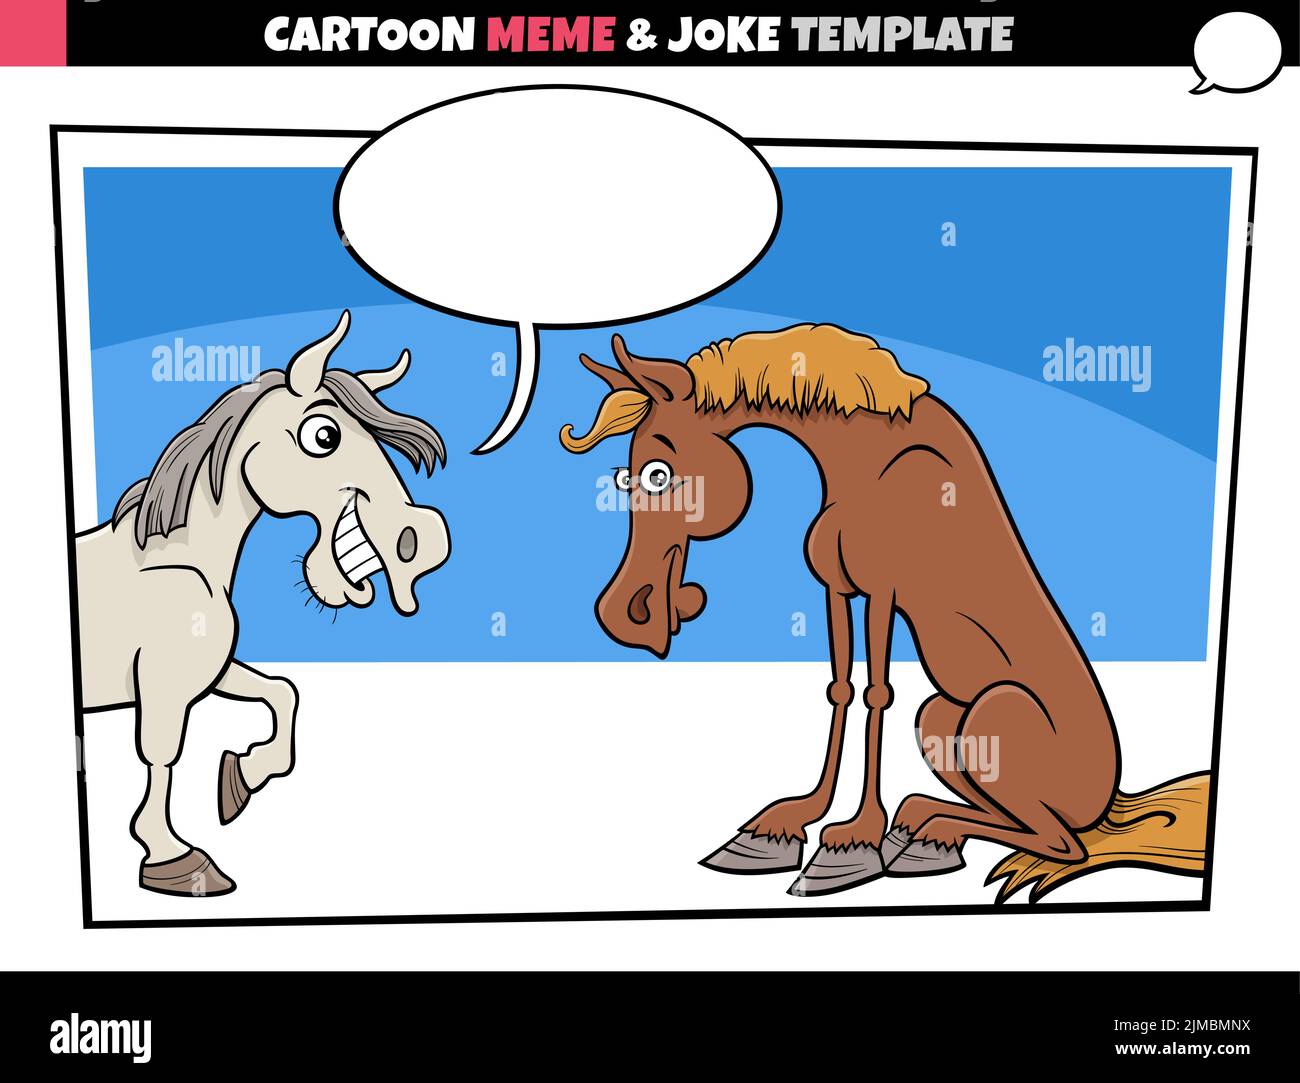 funny horse jokes